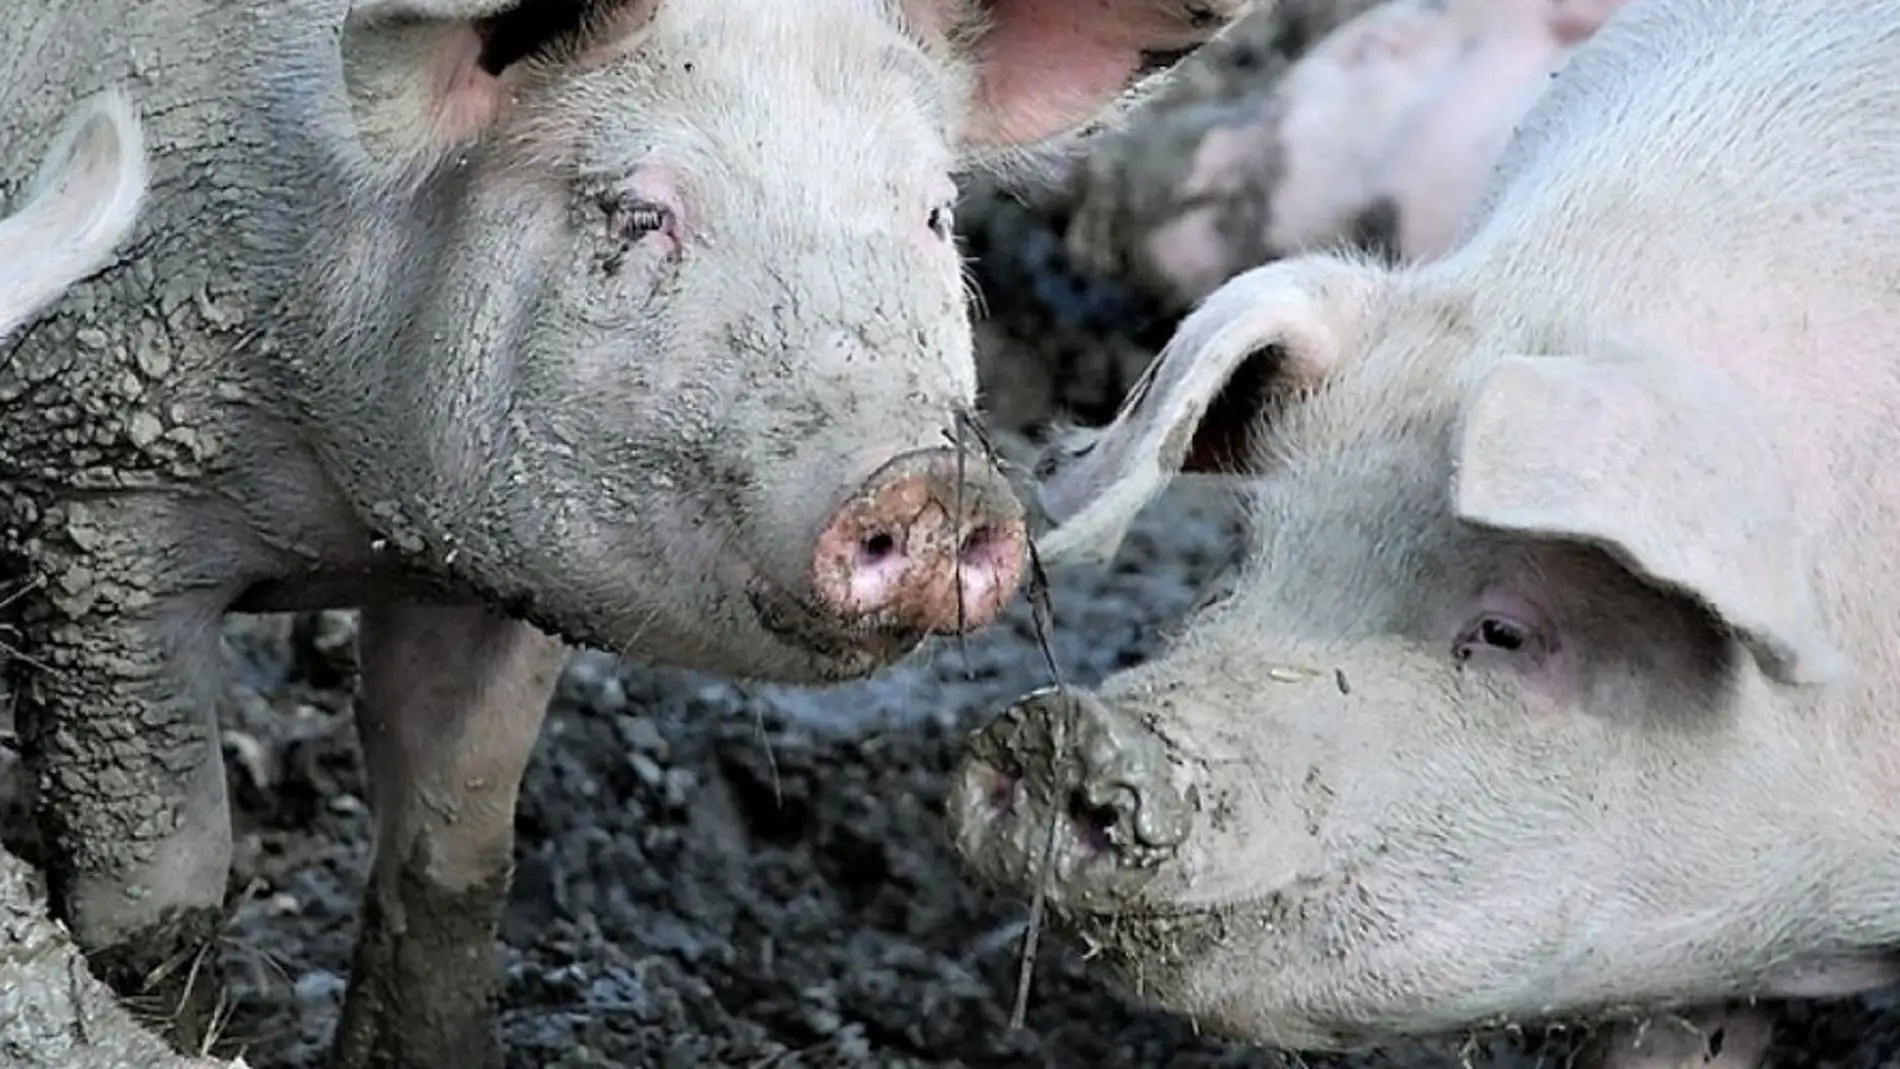 Podemos y PSOE piden más control sobre las granjas porcinas alrededor del Mar Menor